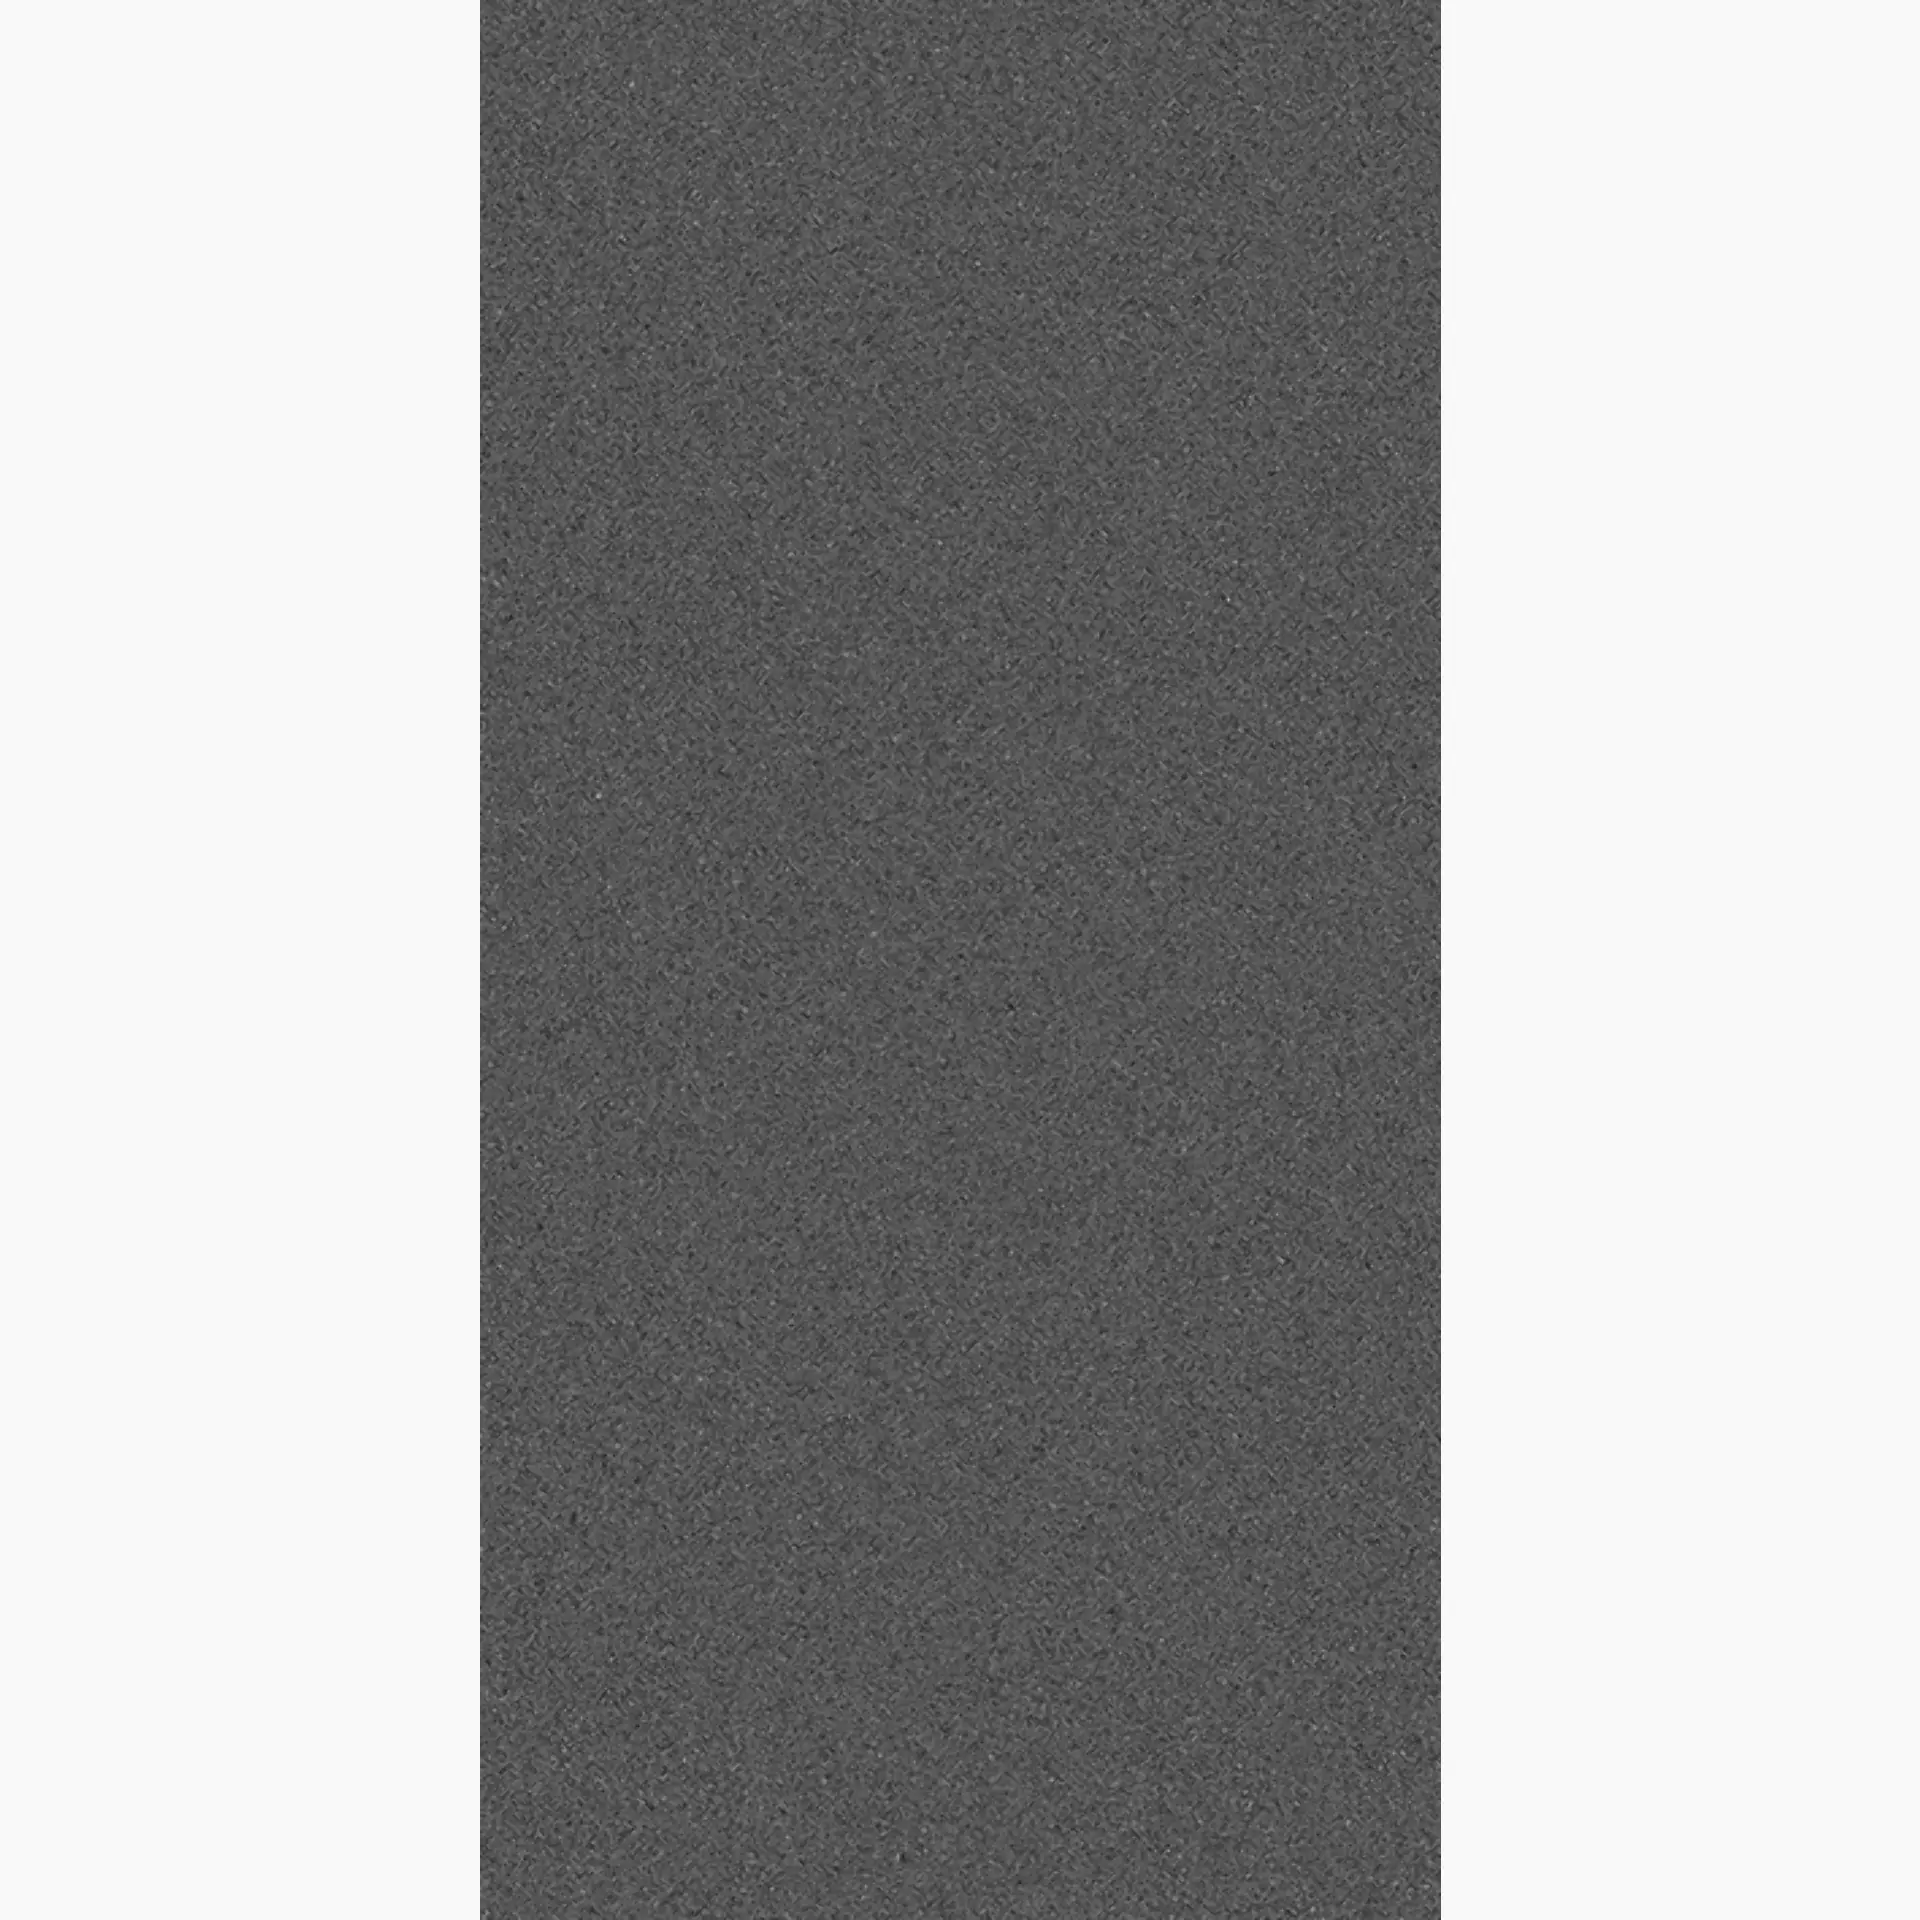 Wandfliese,Bodenfliese Villeroy & Boch Pure Line 2.0 Asphalt Grey Matt Asphalt Grey 2754-UL90 matt 30x60cm rektifiziert 12mm